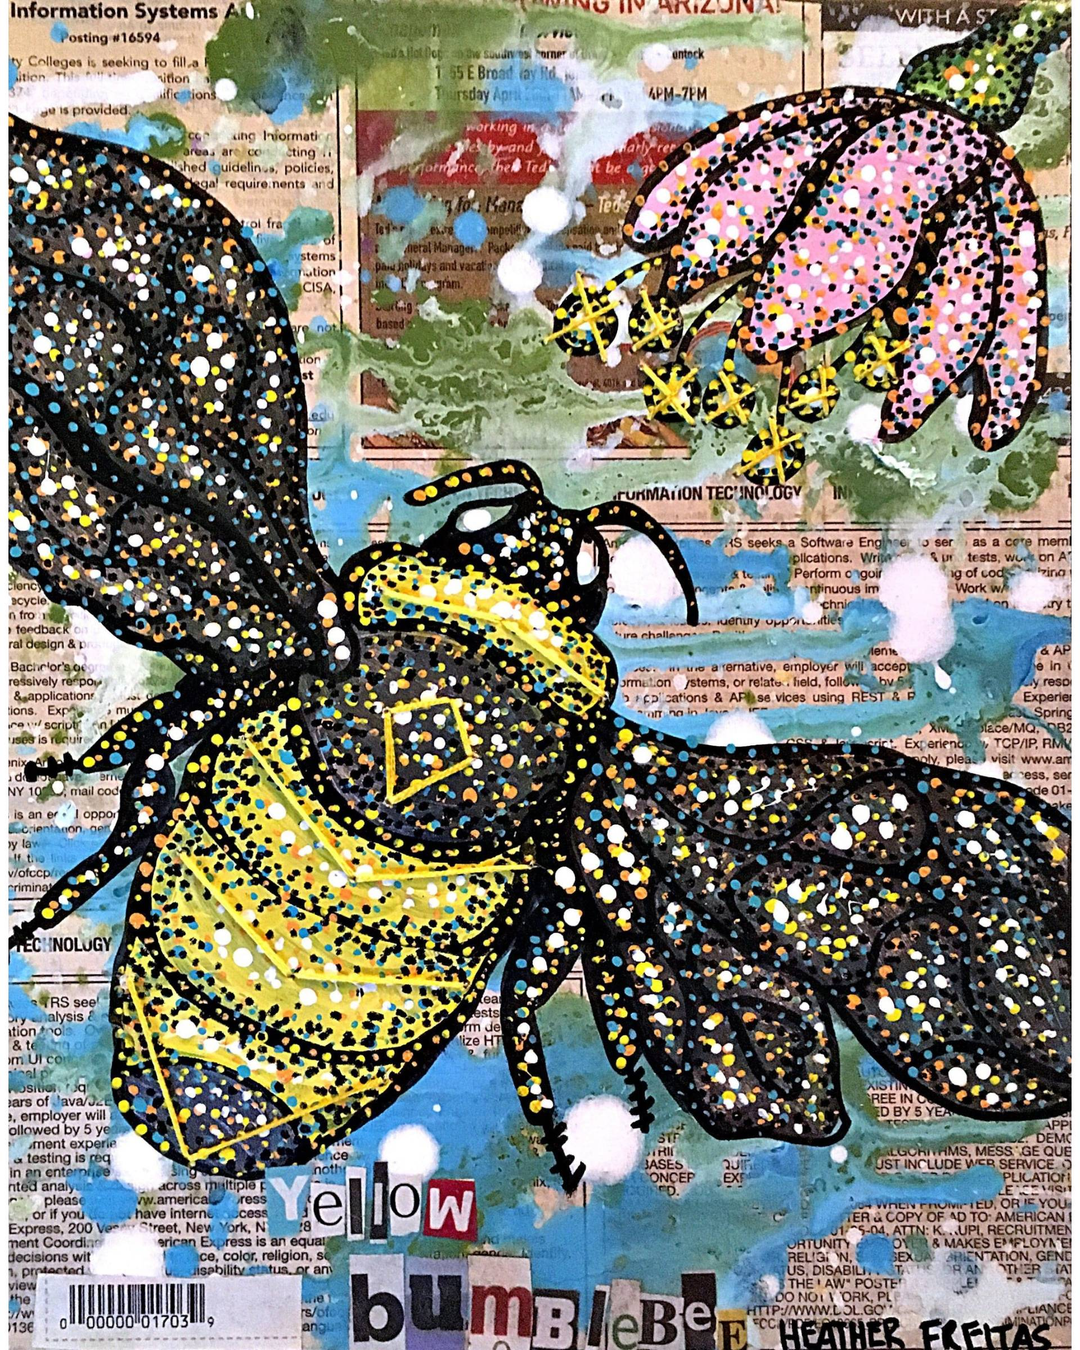 Yellow Bumblebee - Heather Freitas 